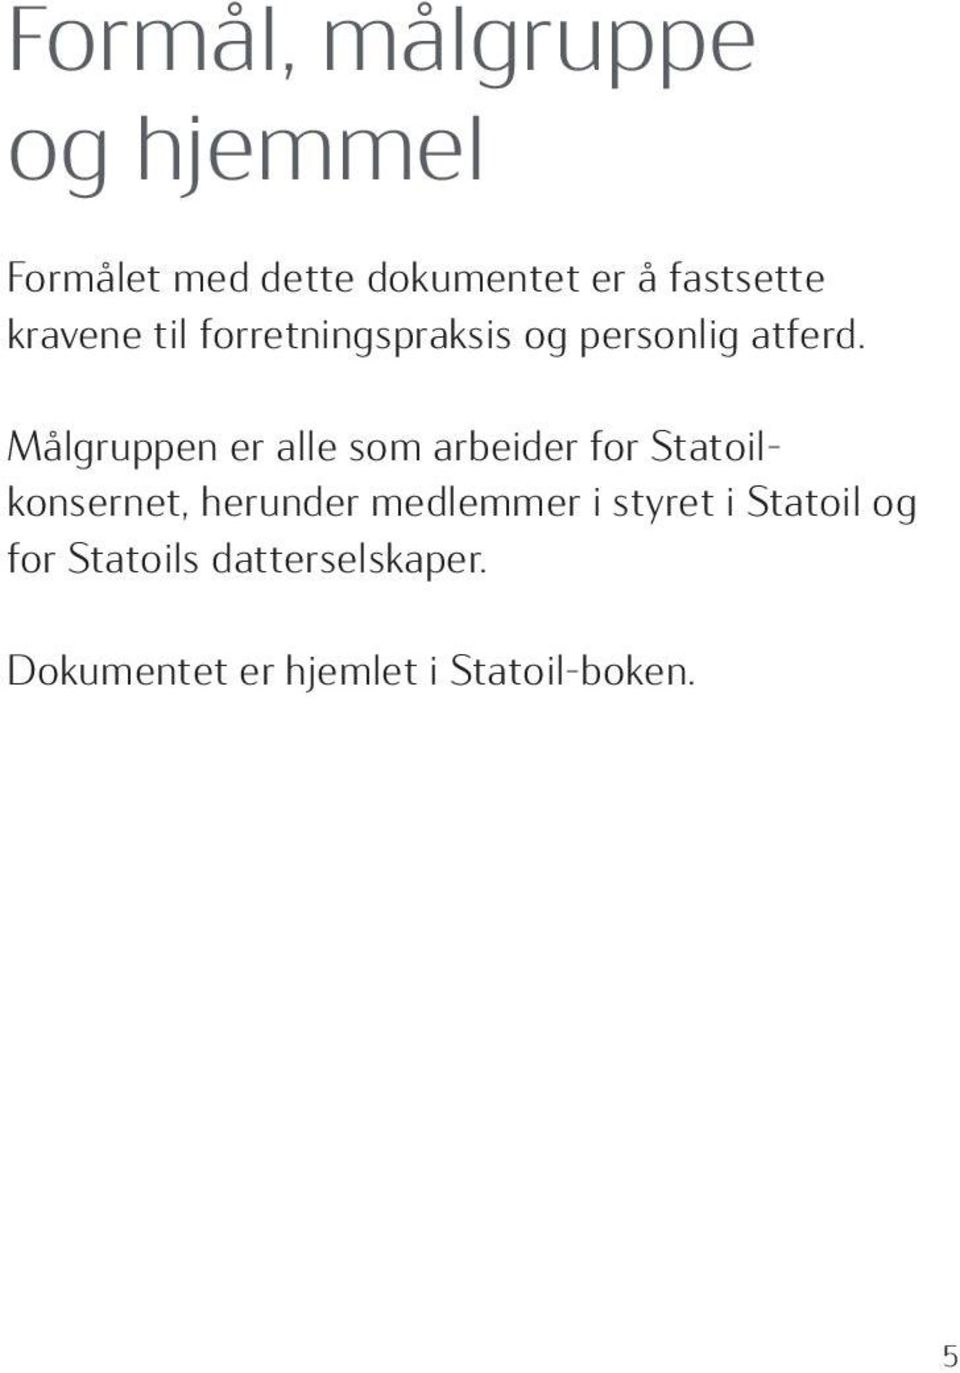 Målgruppen er alle som arbeider for Statoilkonsernet, herunder medlemmer